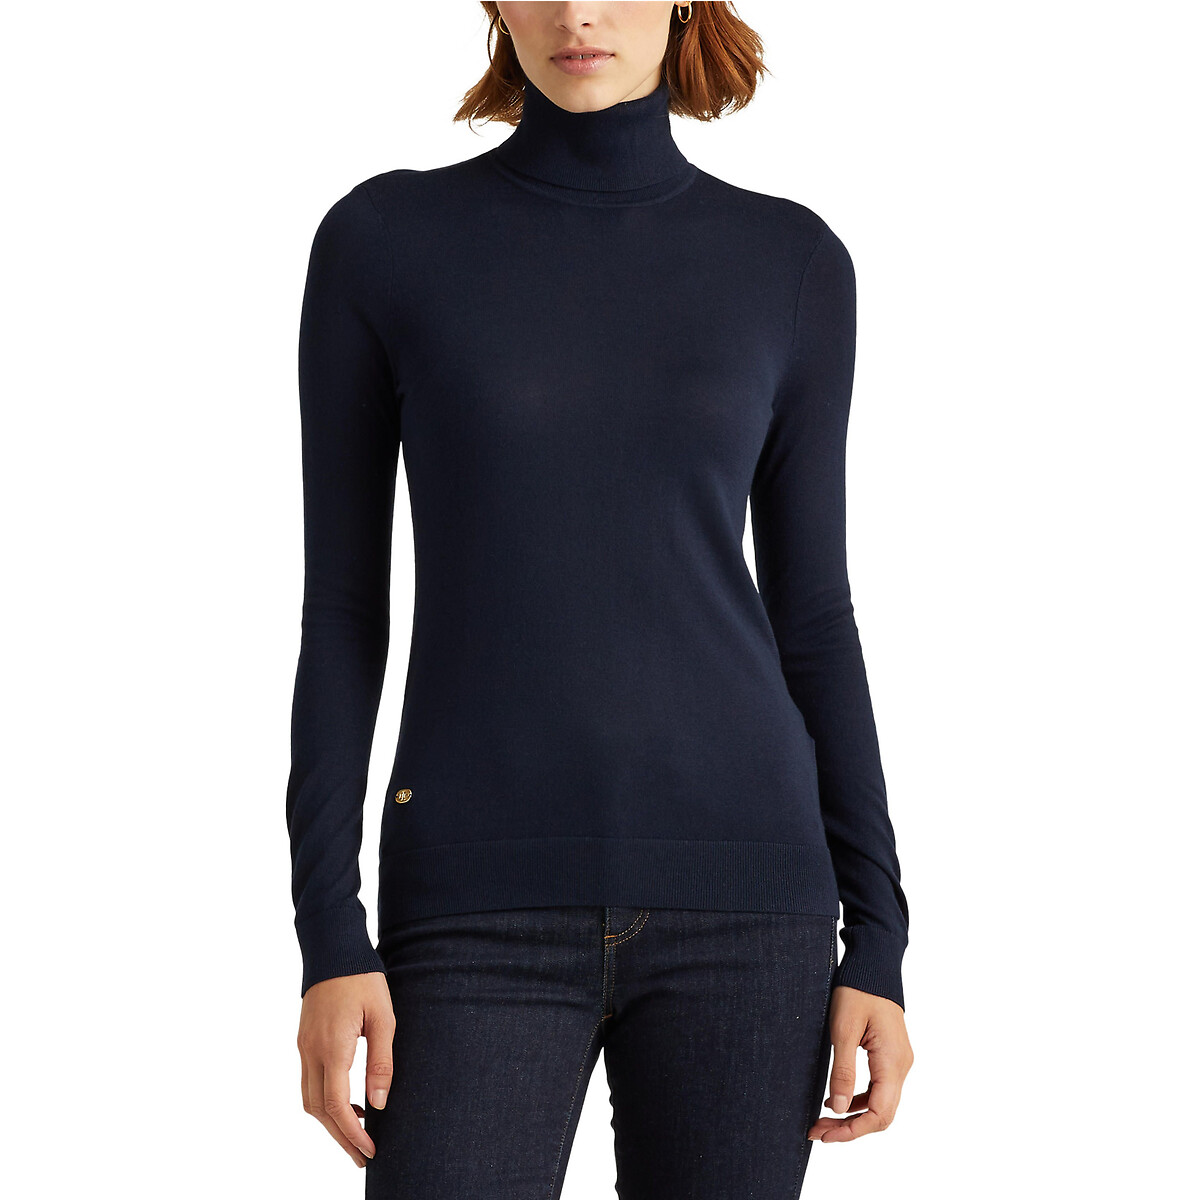 Пуловер ZOE с высоким воротником из тонкого трикотажа XS синий пуловер с высоким воротником из тонкого трикотажа m черный